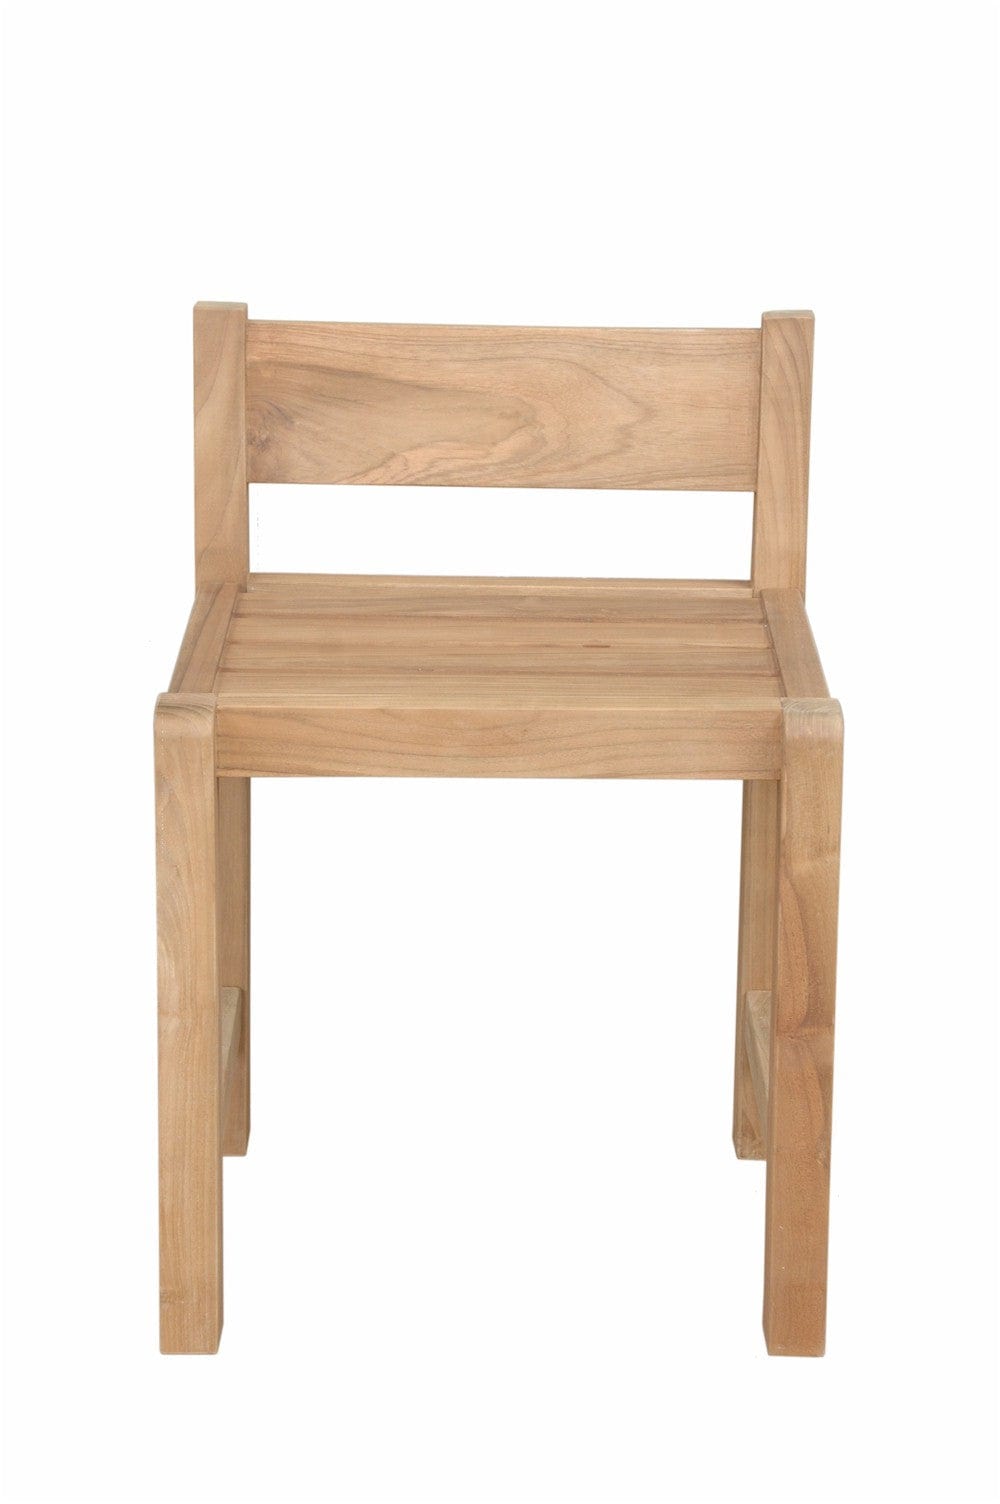 Sedona Chair - Molaix82045295757SedonaCHD-2025